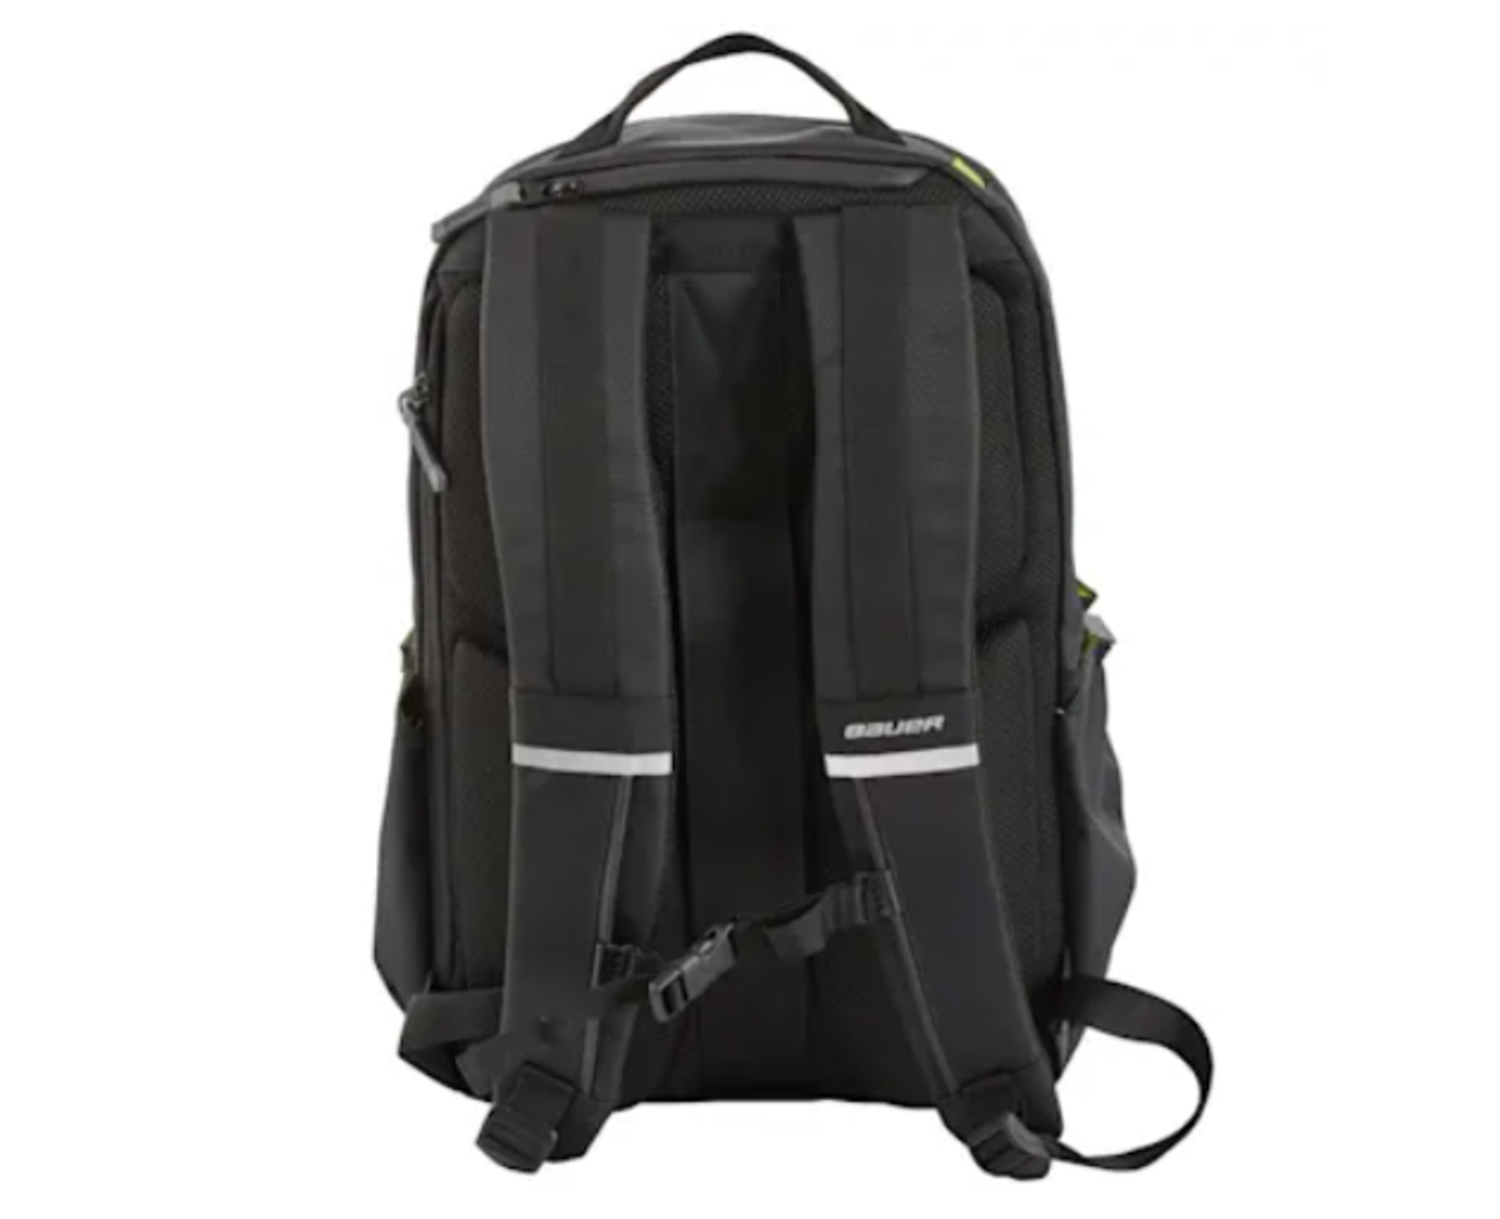 First-Aid Bag - MULTY'S - Elite Bags - Black